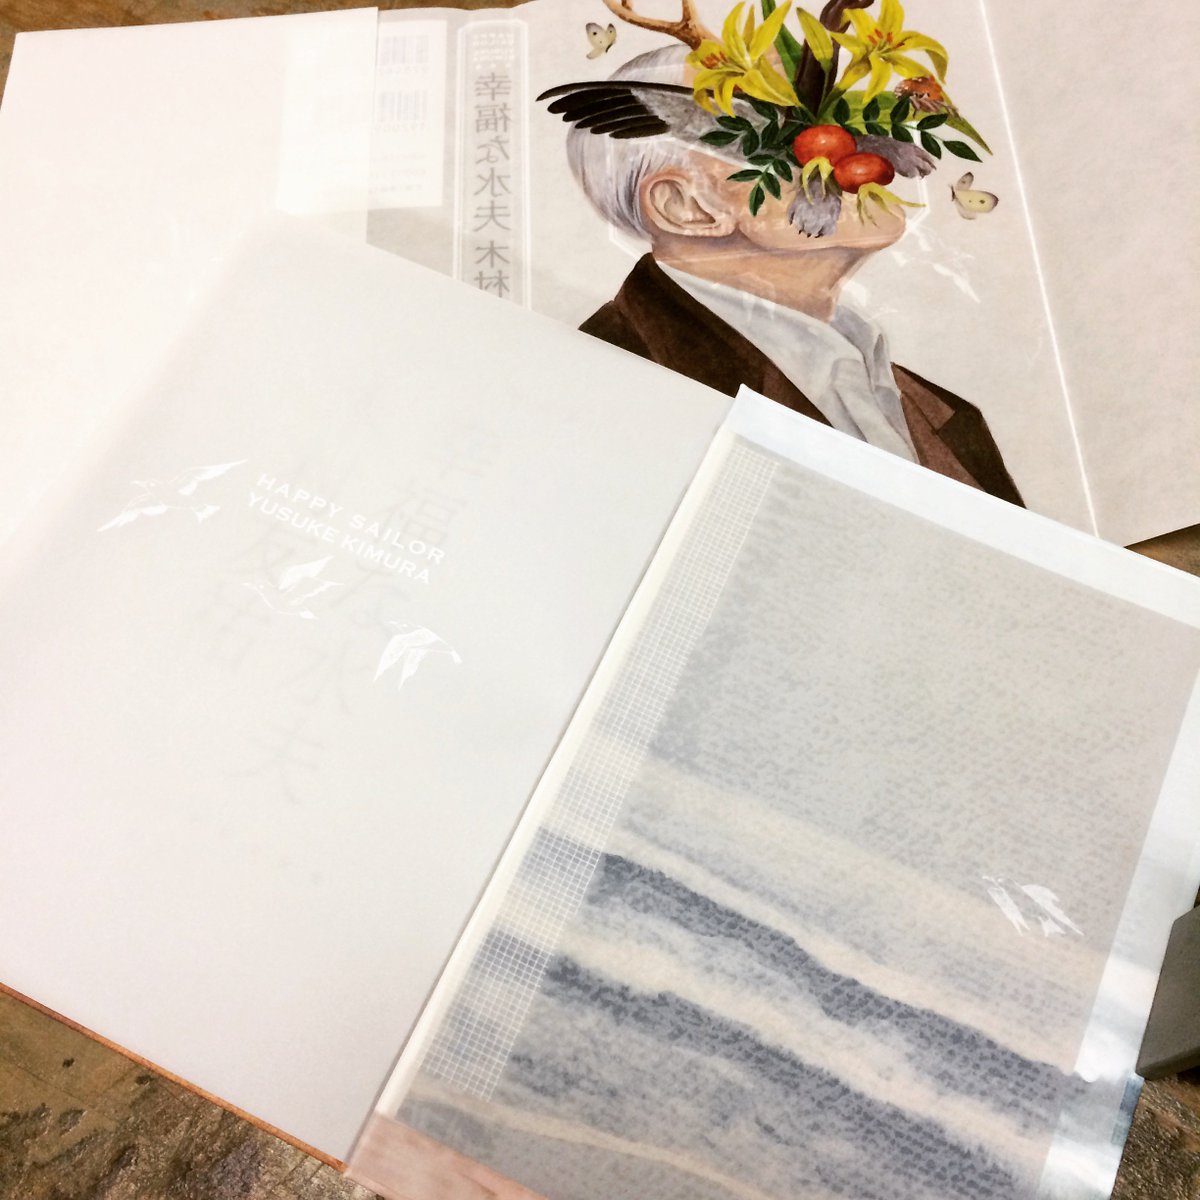 佐藤亜沙美 Asami Sato 幸福な水夫 そしてなんと 通常は見返しの下に隠れてしまう表紙の芯紙に海の絵を印刷して 見返しのトレーシングペーパー から透けるようになっています 見返しには鳥のイラストが刷られていて 海を渡るように飛んでいます